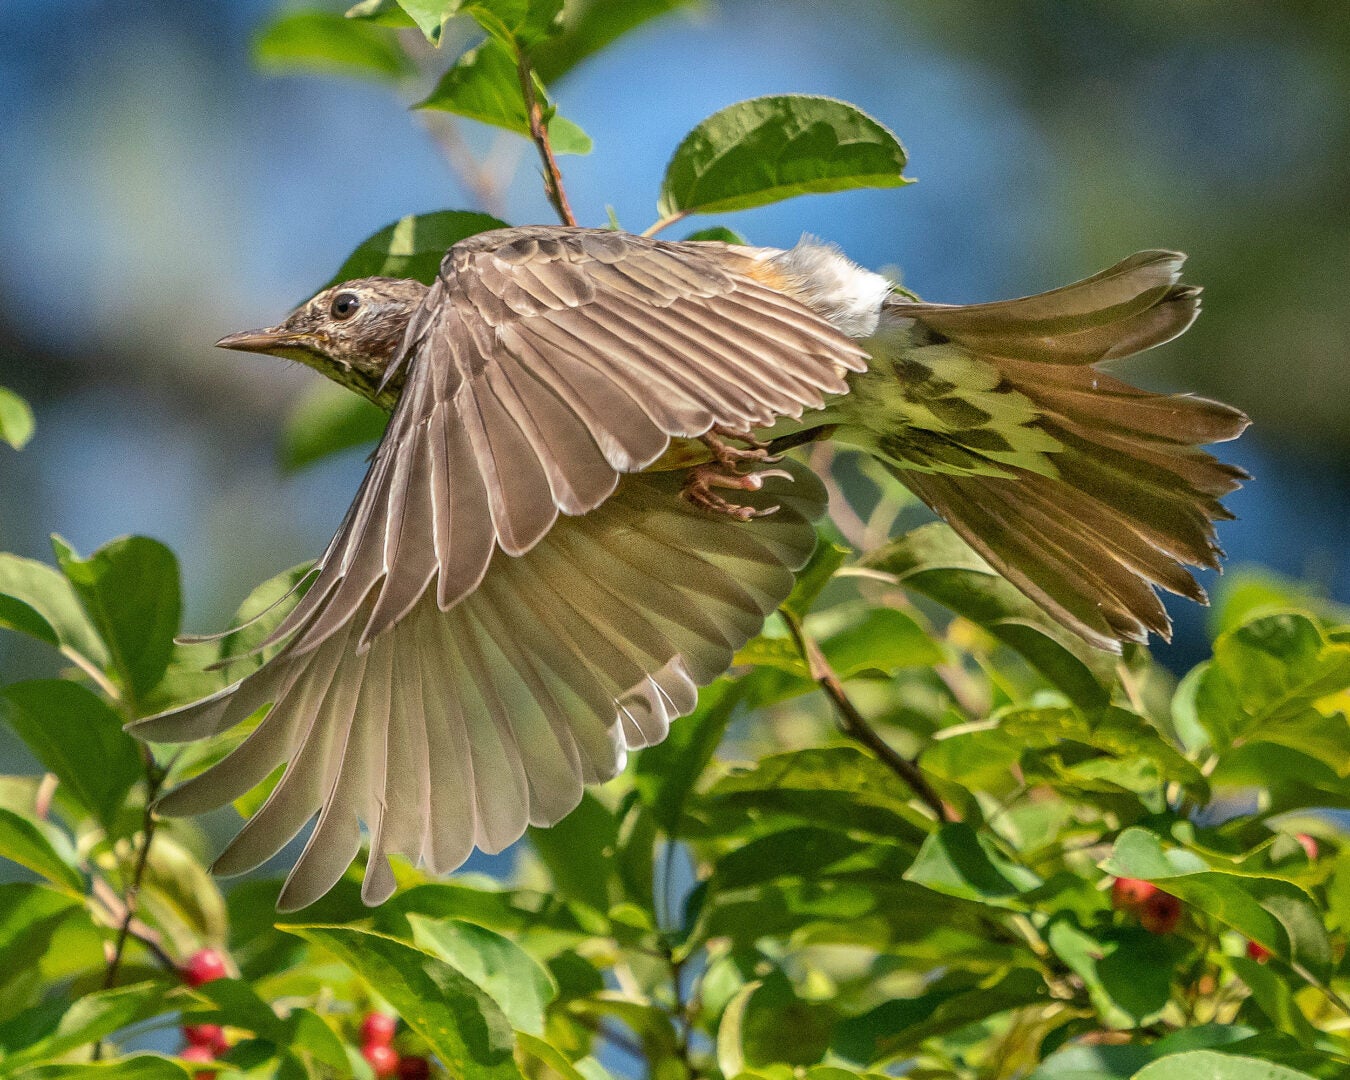 A bird flying by a bush